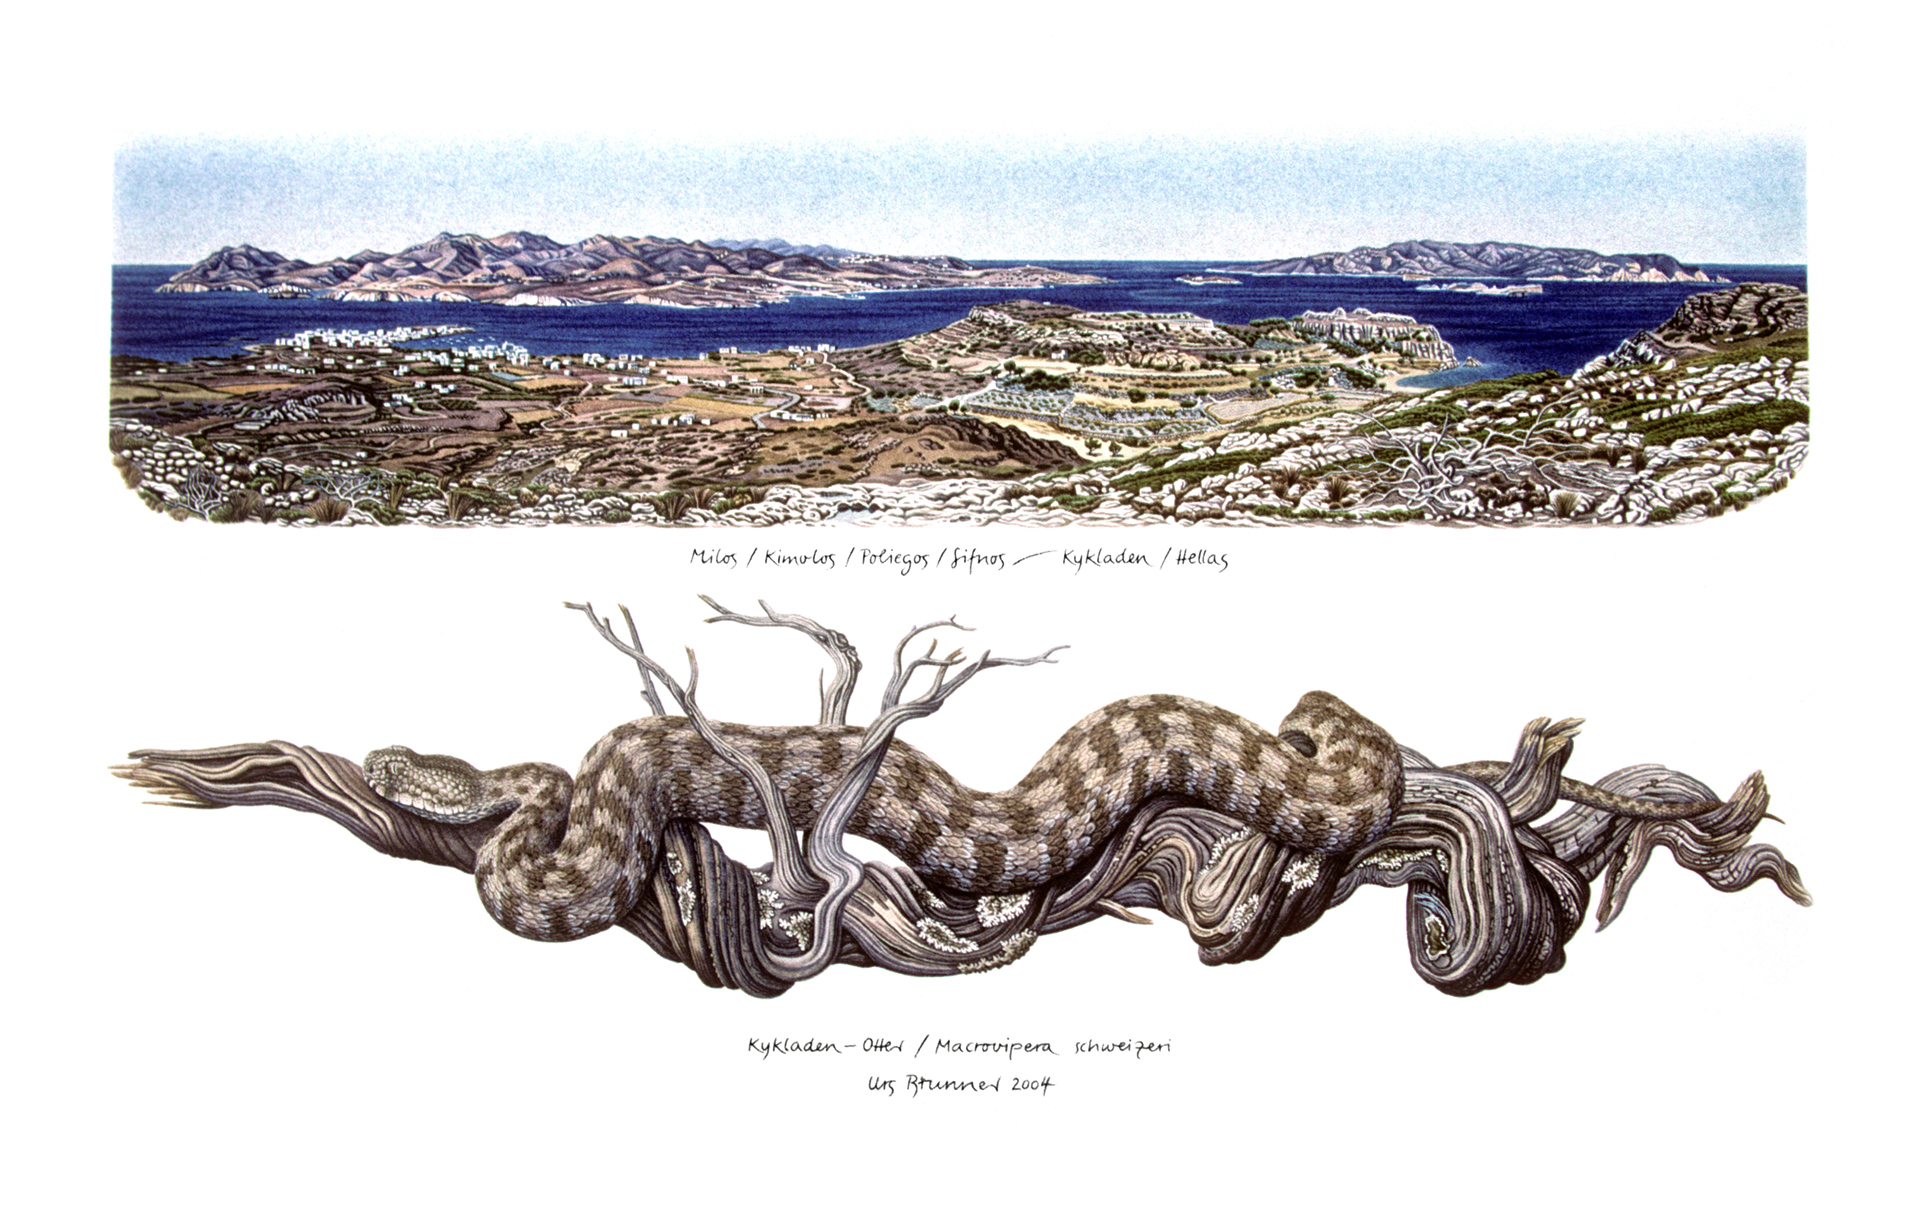 Kykladenviper / Insel Milos, 2004, Aquarell und Farbstift auf Papier, 35 x 60 cm